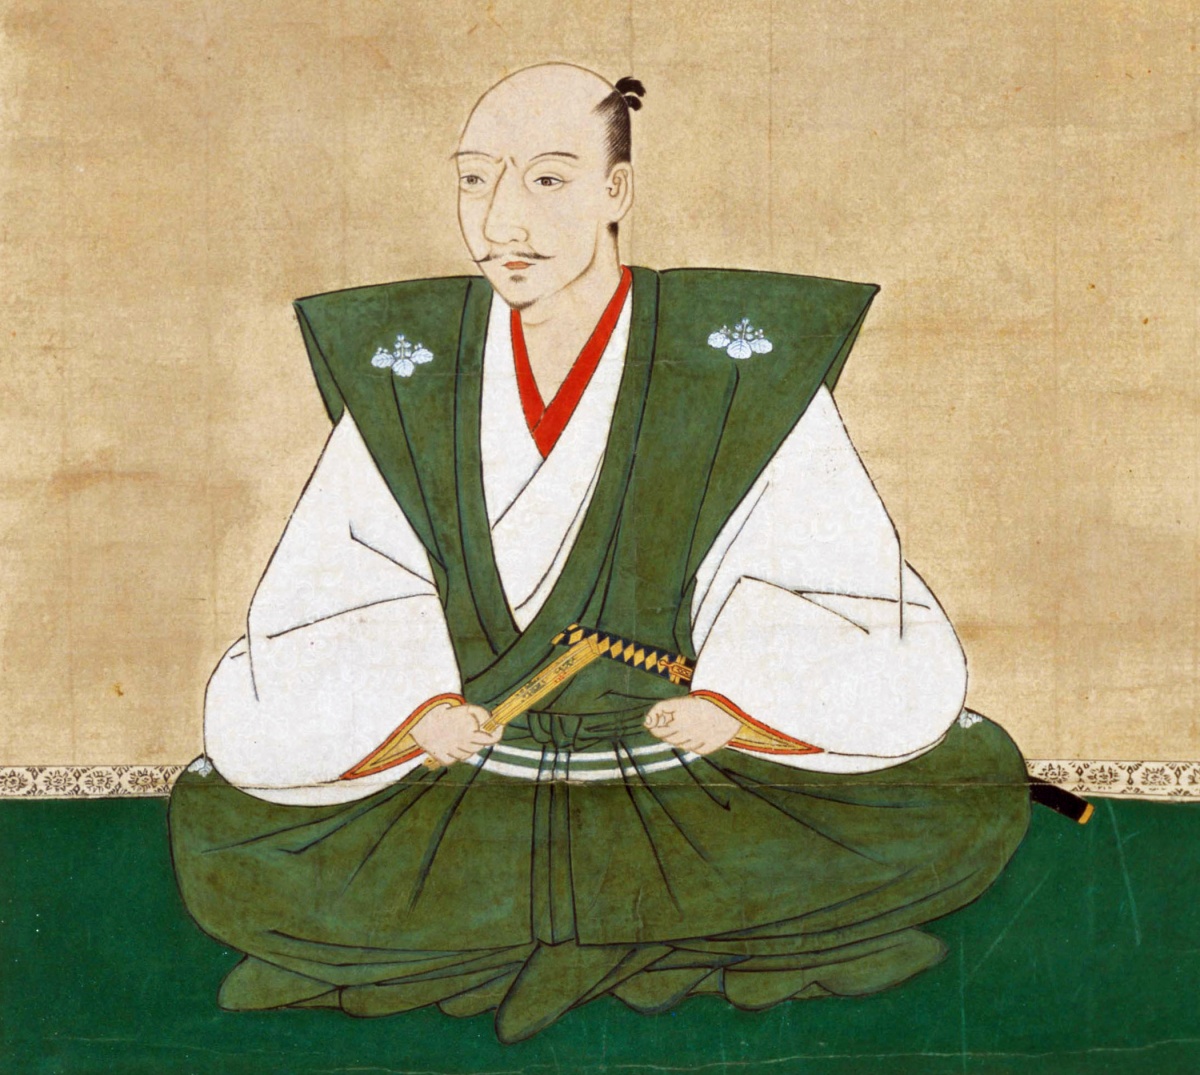 1. Oda Nobunaga (織田 信長)